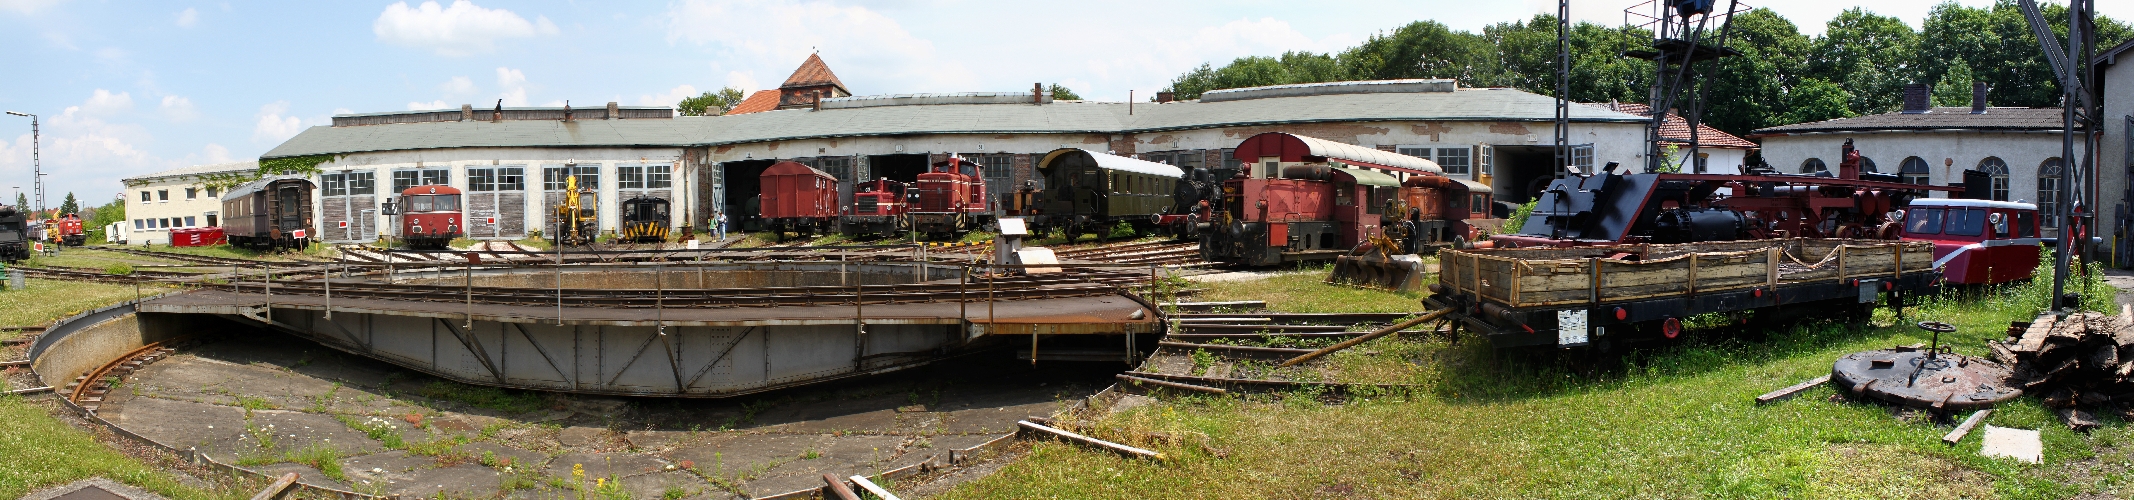 Eisenbahnmuseum in Nördlingen 2